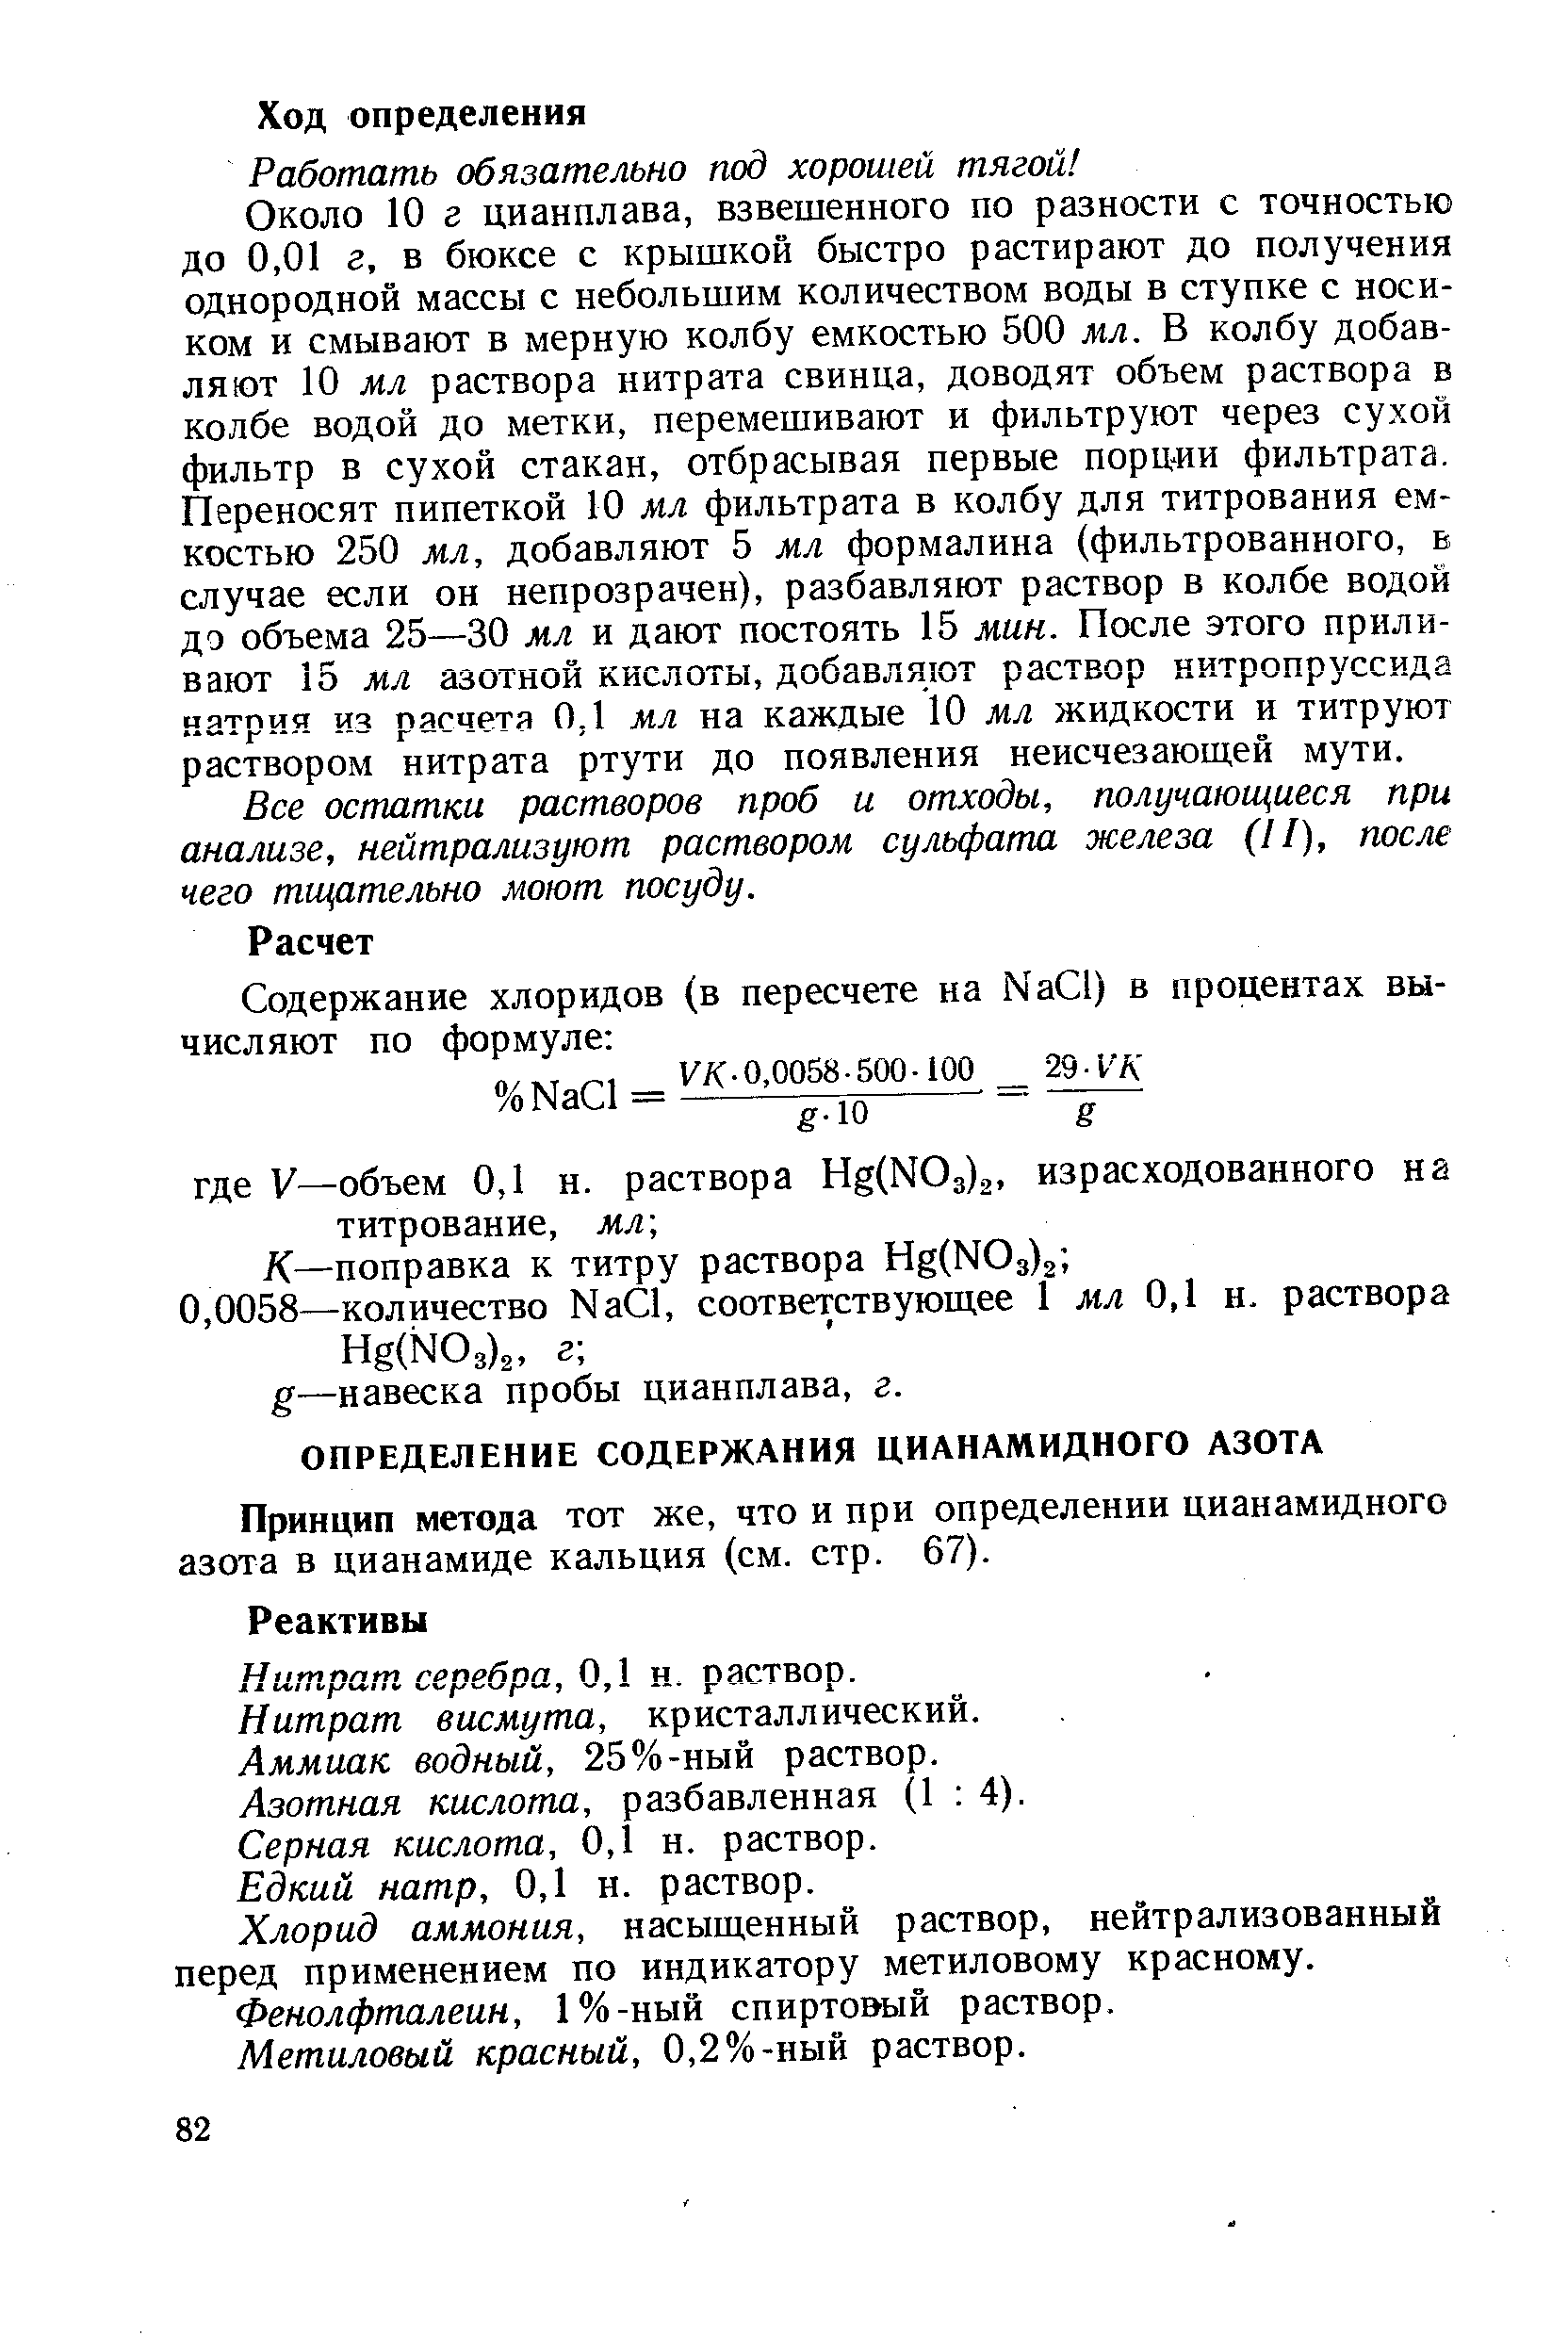 Принцип метода тот же, что и при определении цианамидного азота в цианамиде кальция (см. стр. 67).